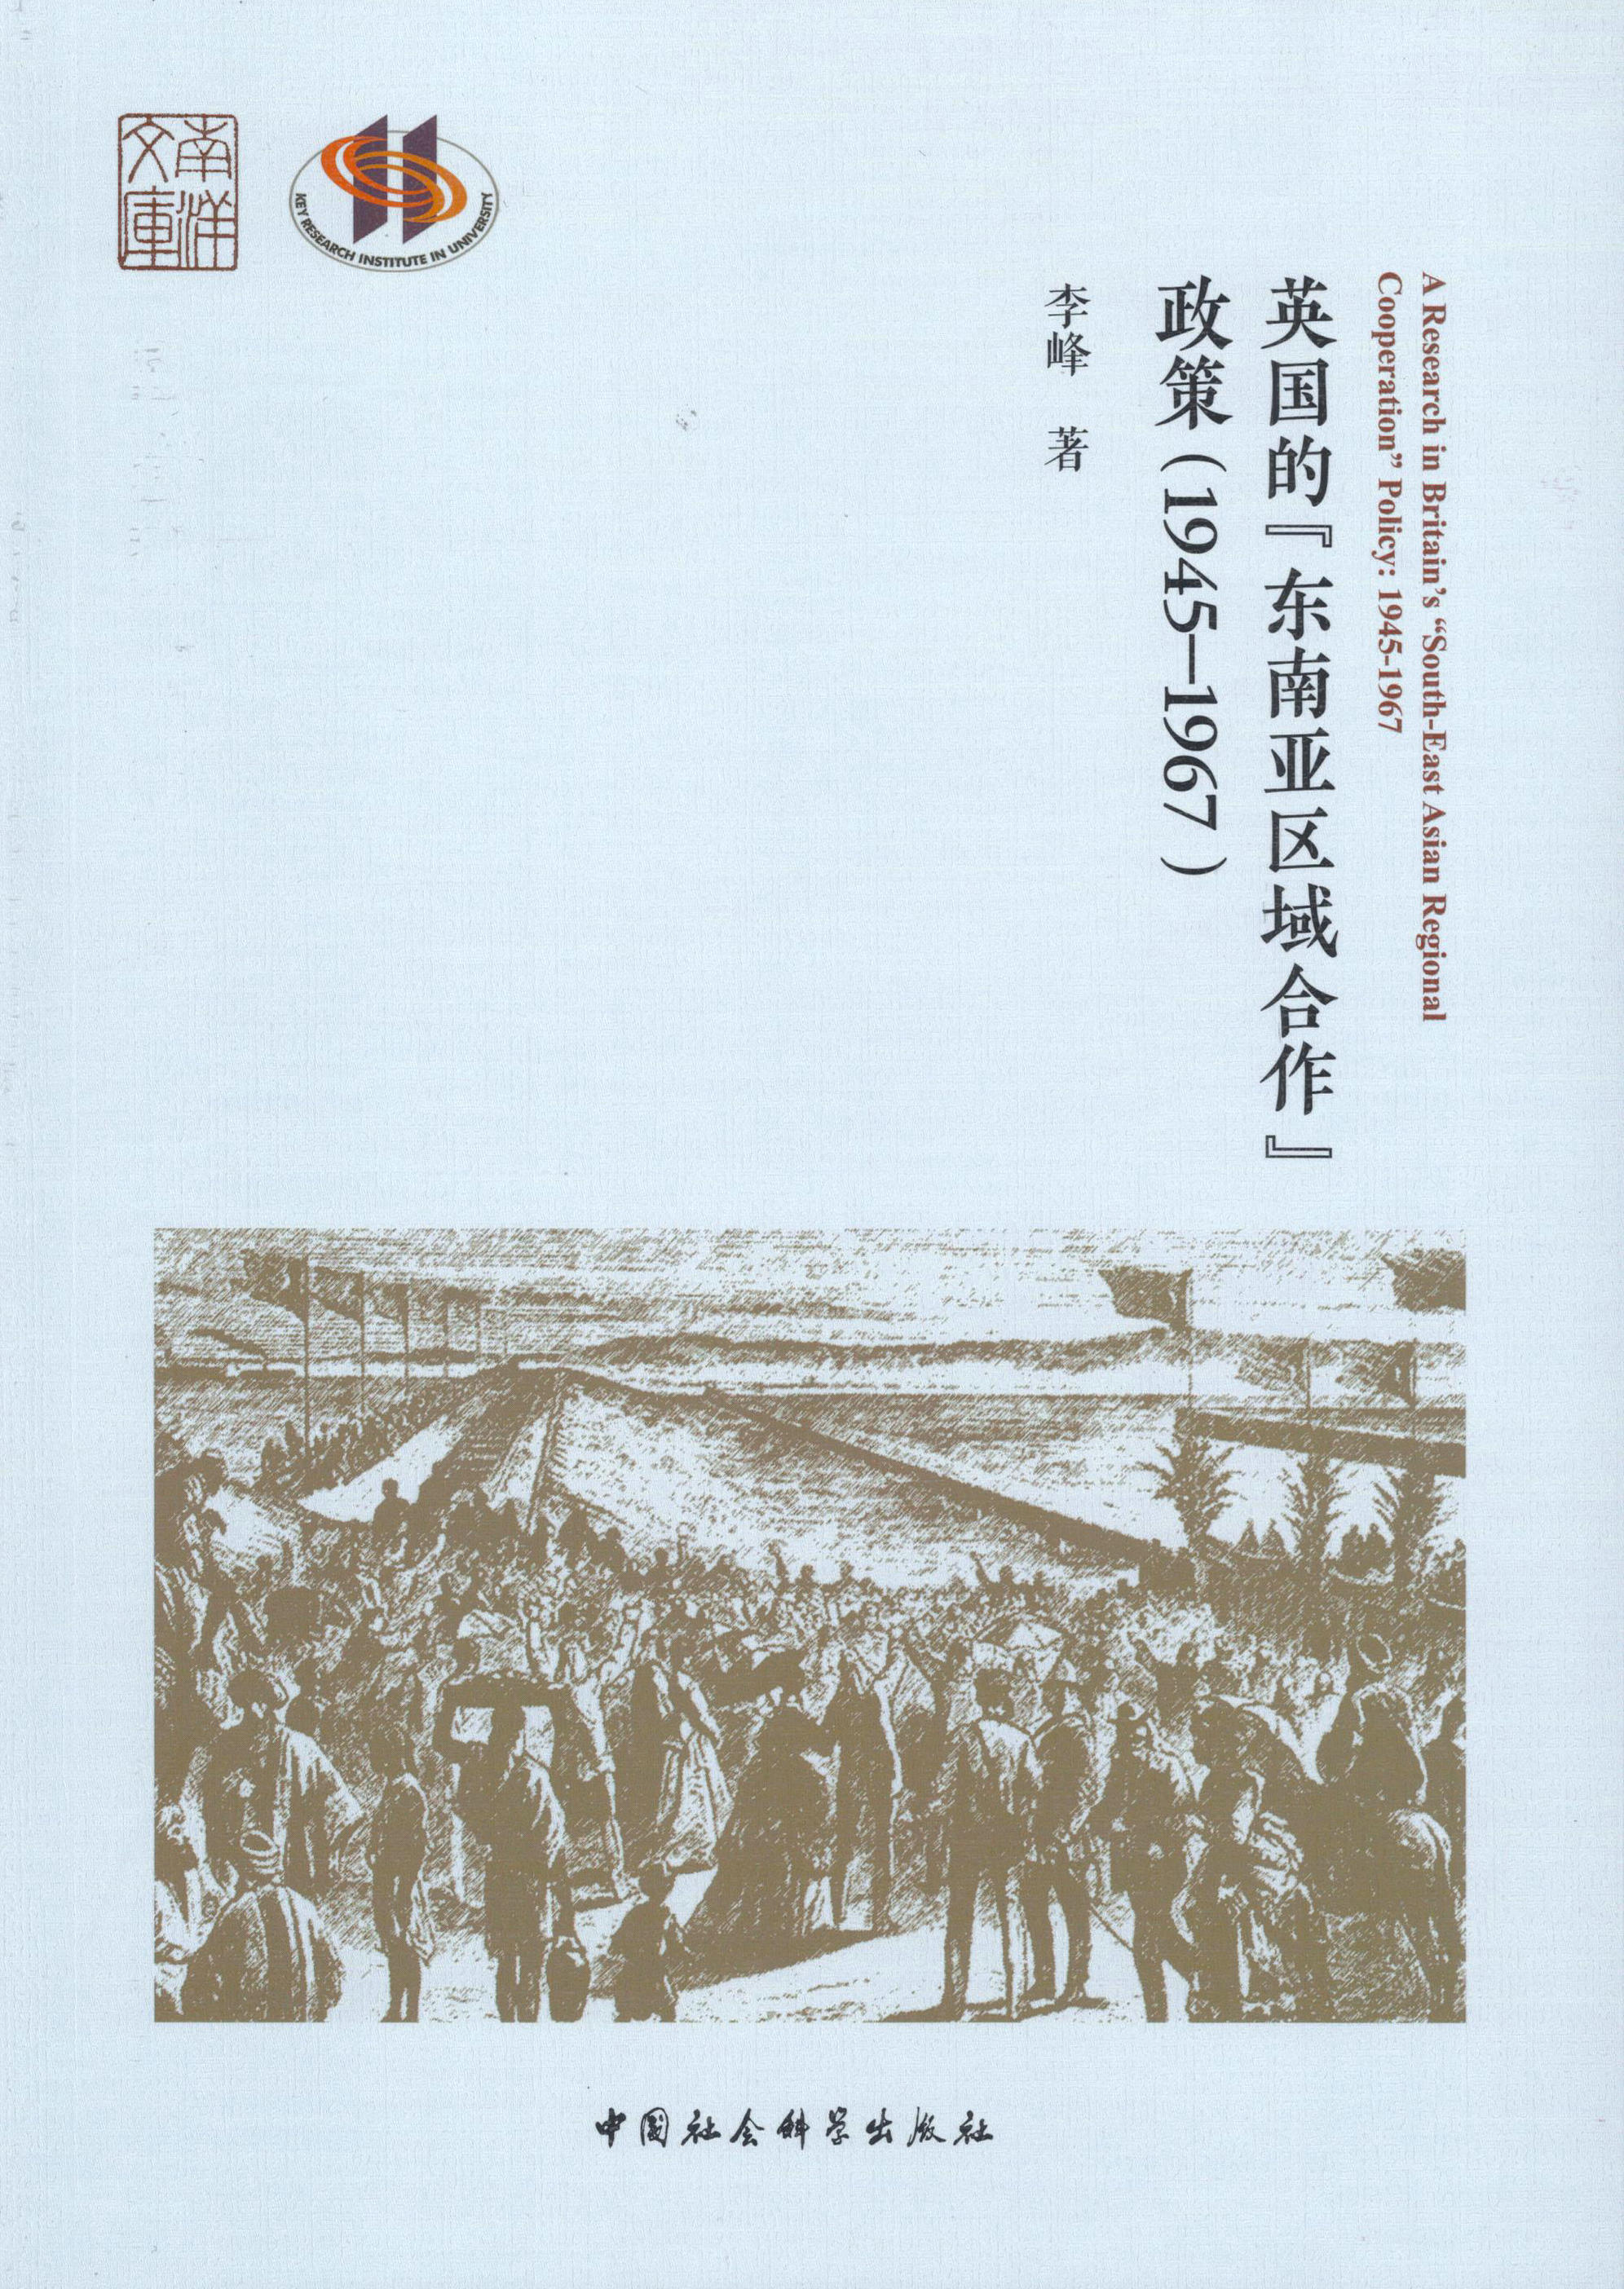 厦门大学国际关系学院助理教授李峰新著《英国的“东南亚区域合作”政策（1945-1967）》出版